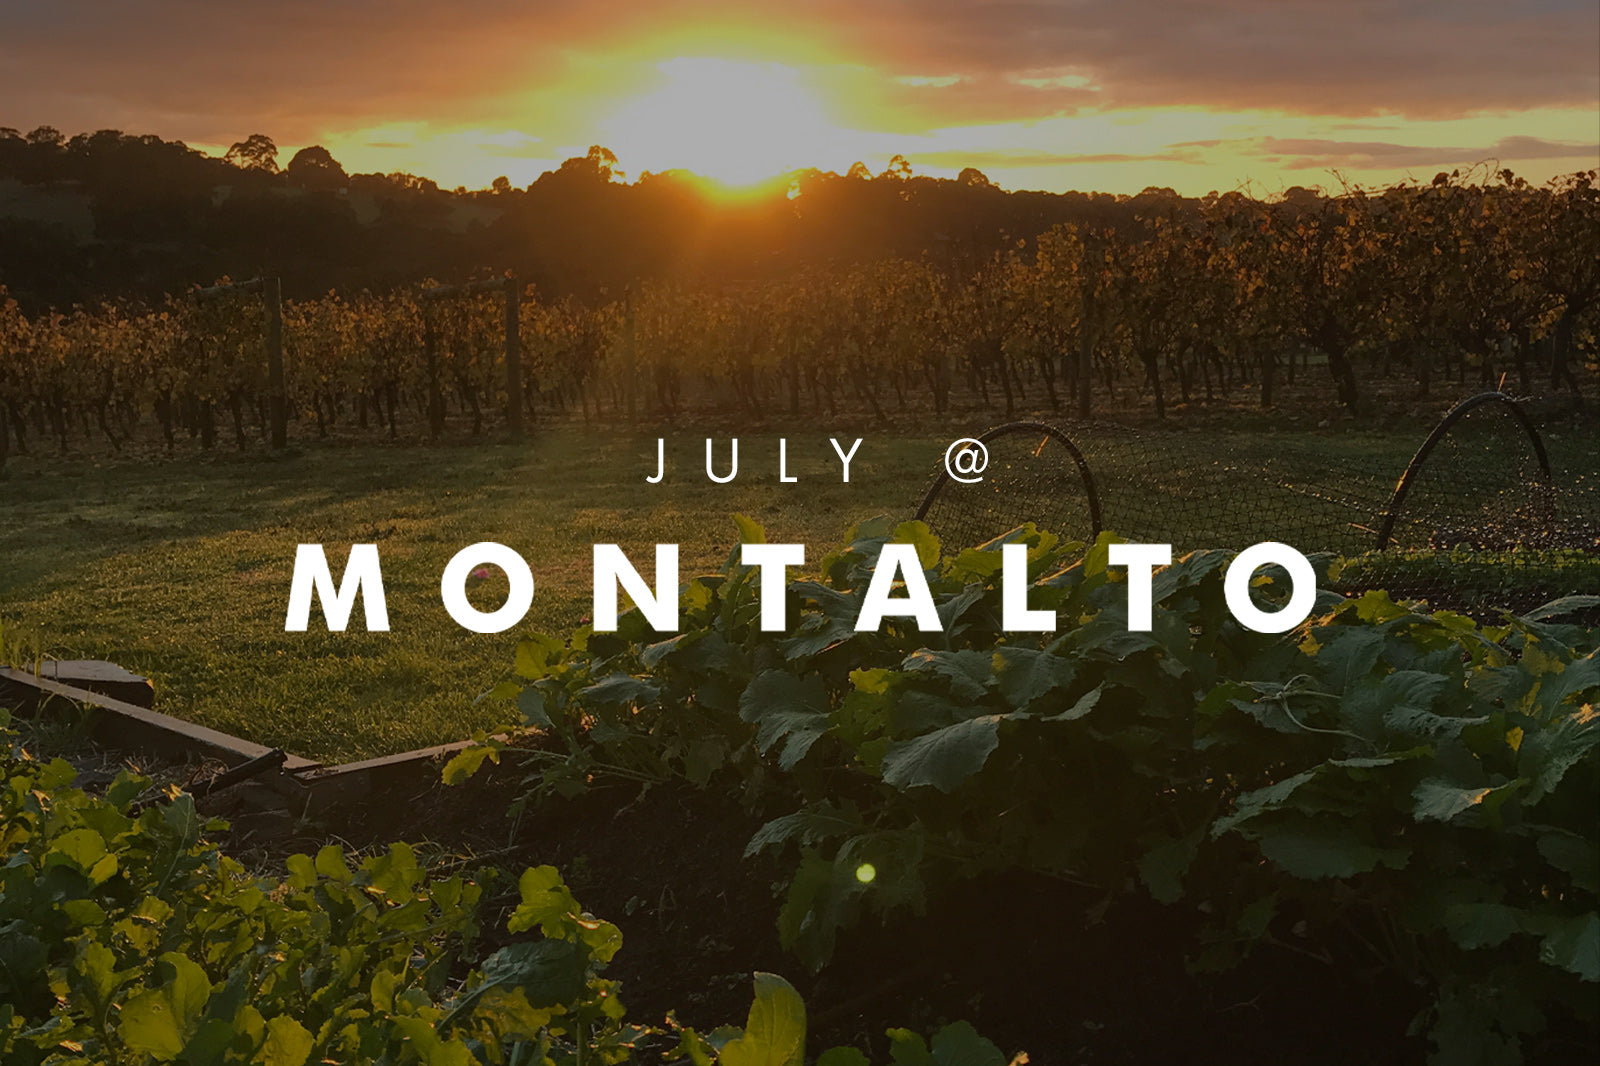 JULY AT MONTALTO